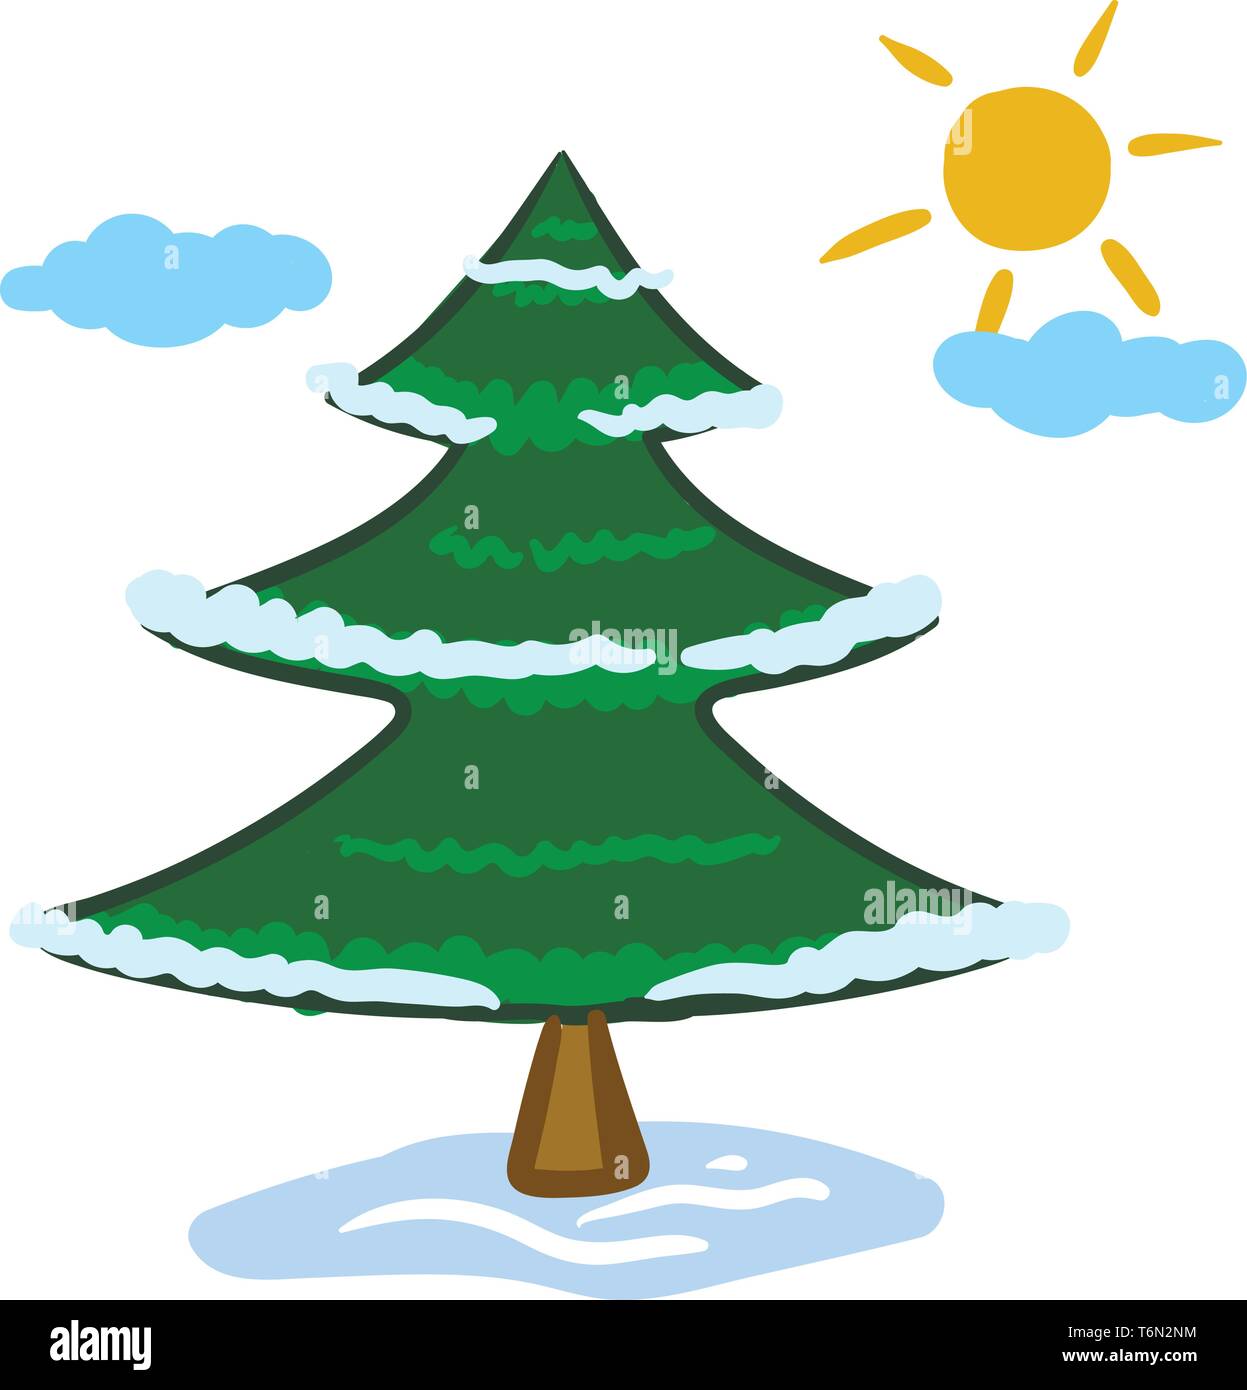 Clipart di una diffusa di conifere albero verde con un segno distintivo di forma conica e coni pendenti raggiungere in alto il cielo con poche nuvole e un crescente s Illustrazione Vettoriale